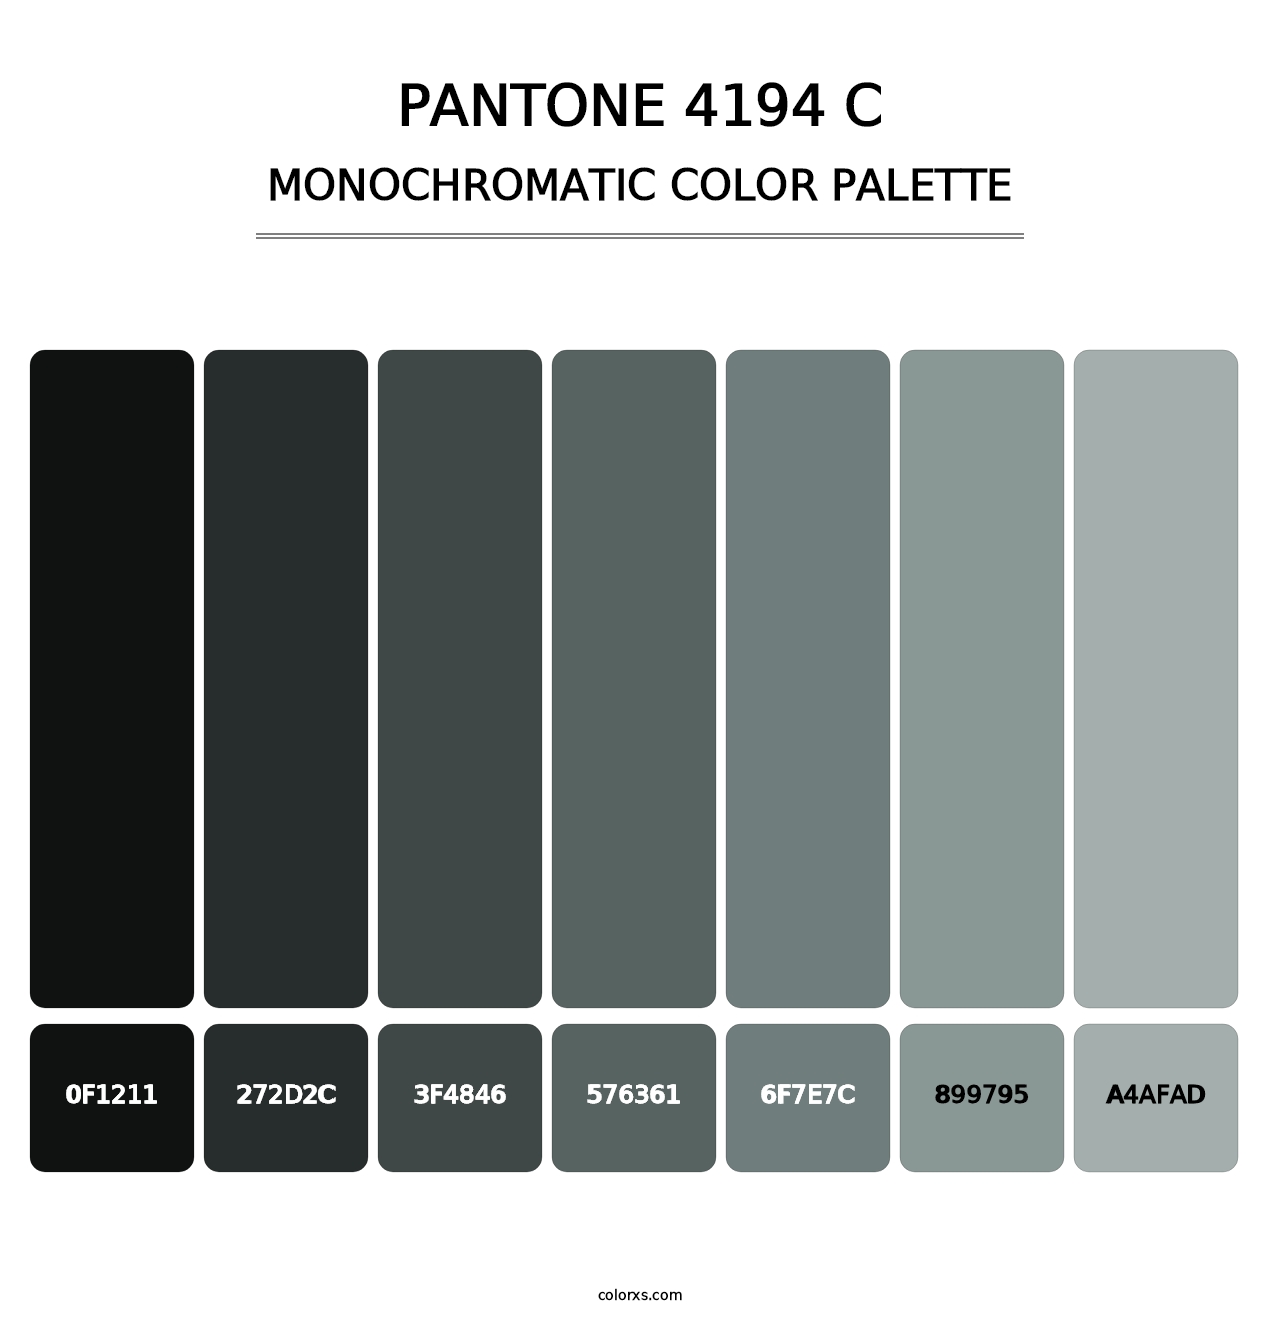 PANTONE 4194 C - Monochromatic Color Palette